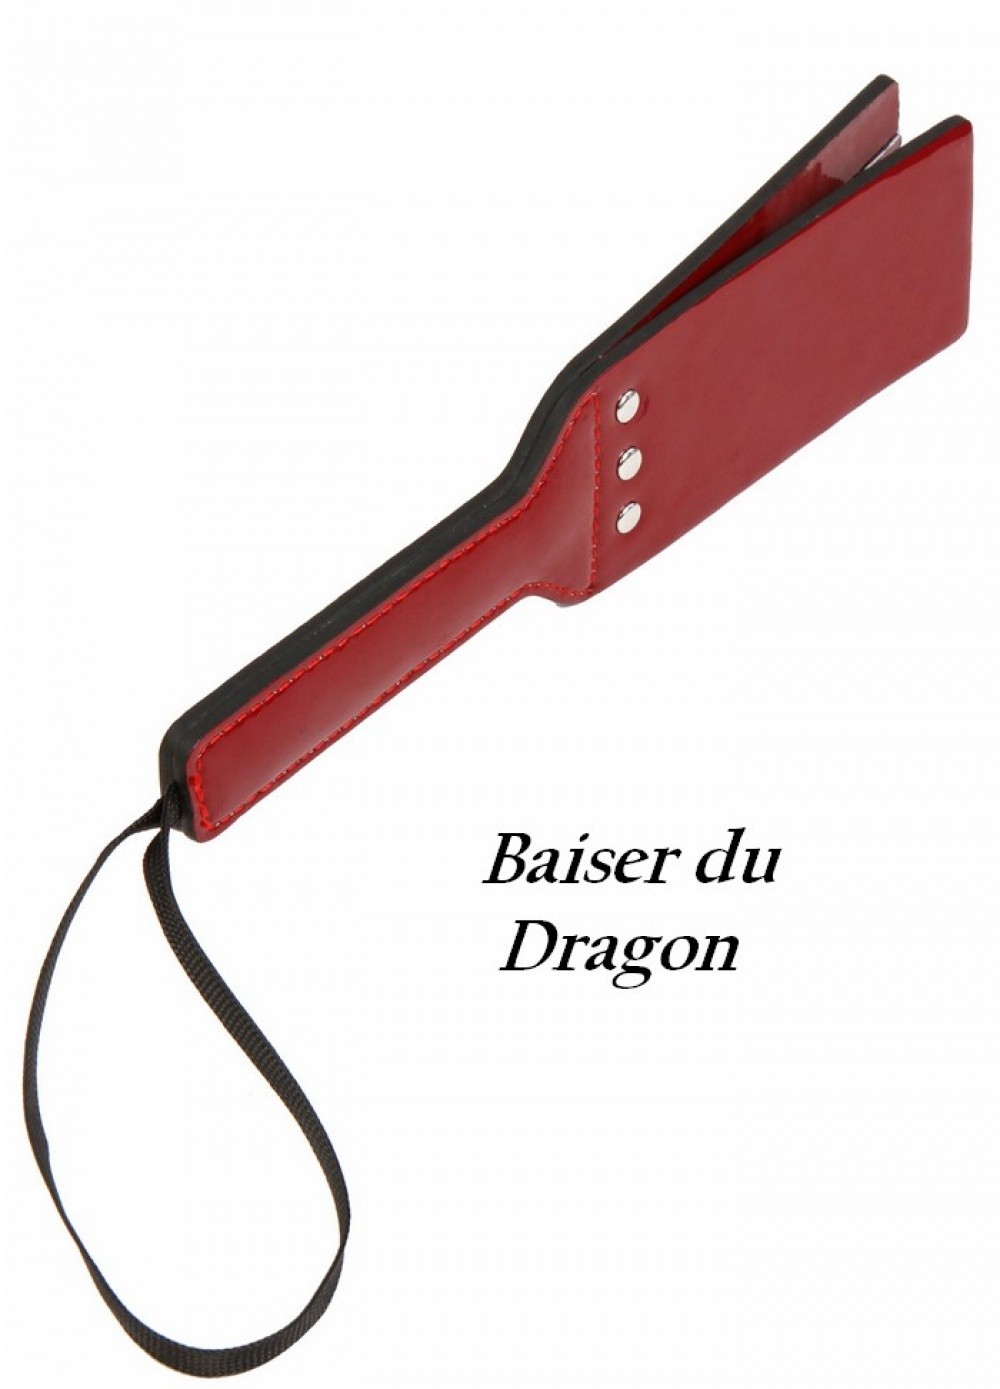 Mini Paddle Baiser du Dragon en Vinyls Rouge